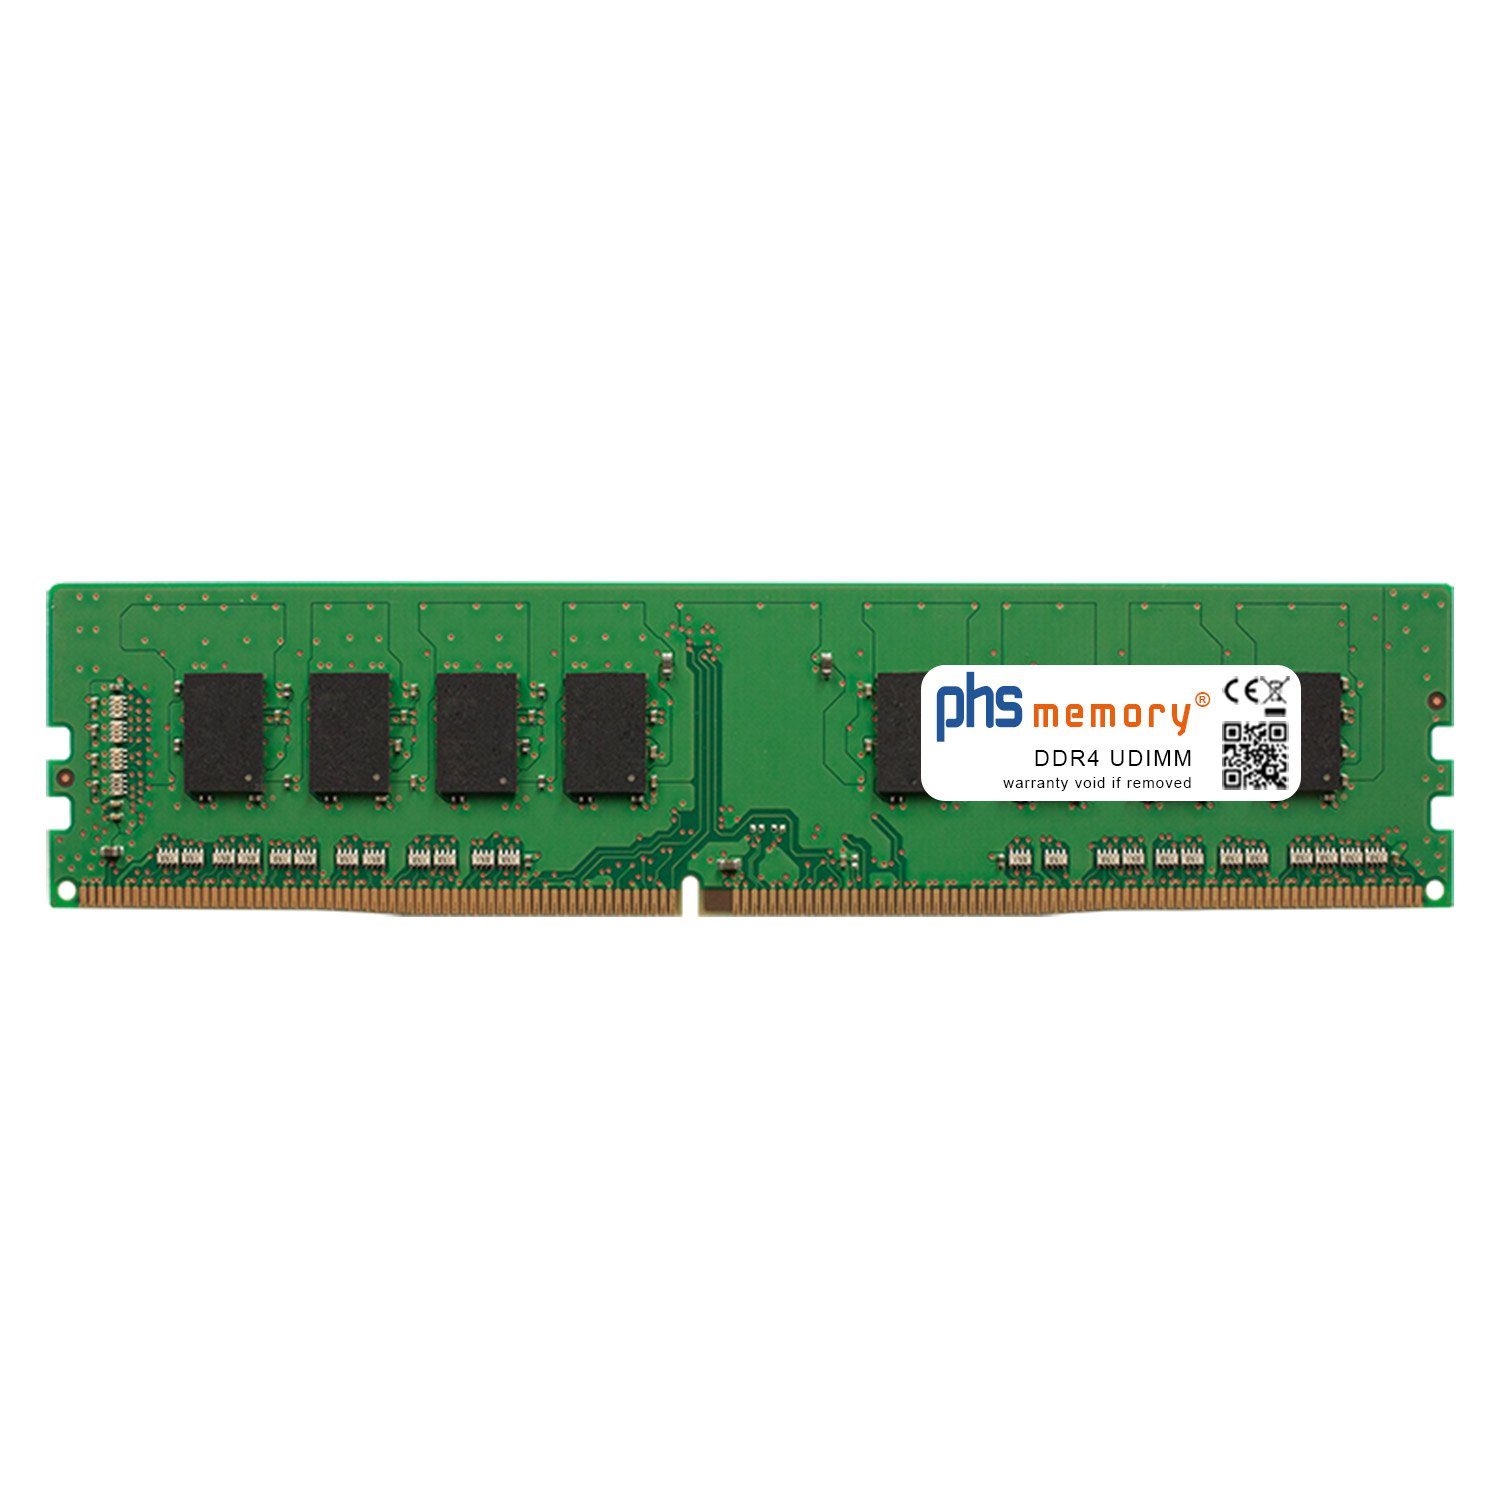 PHS-memory RAM für Captiva Power Starter R65-287 Arbeitsspeicher